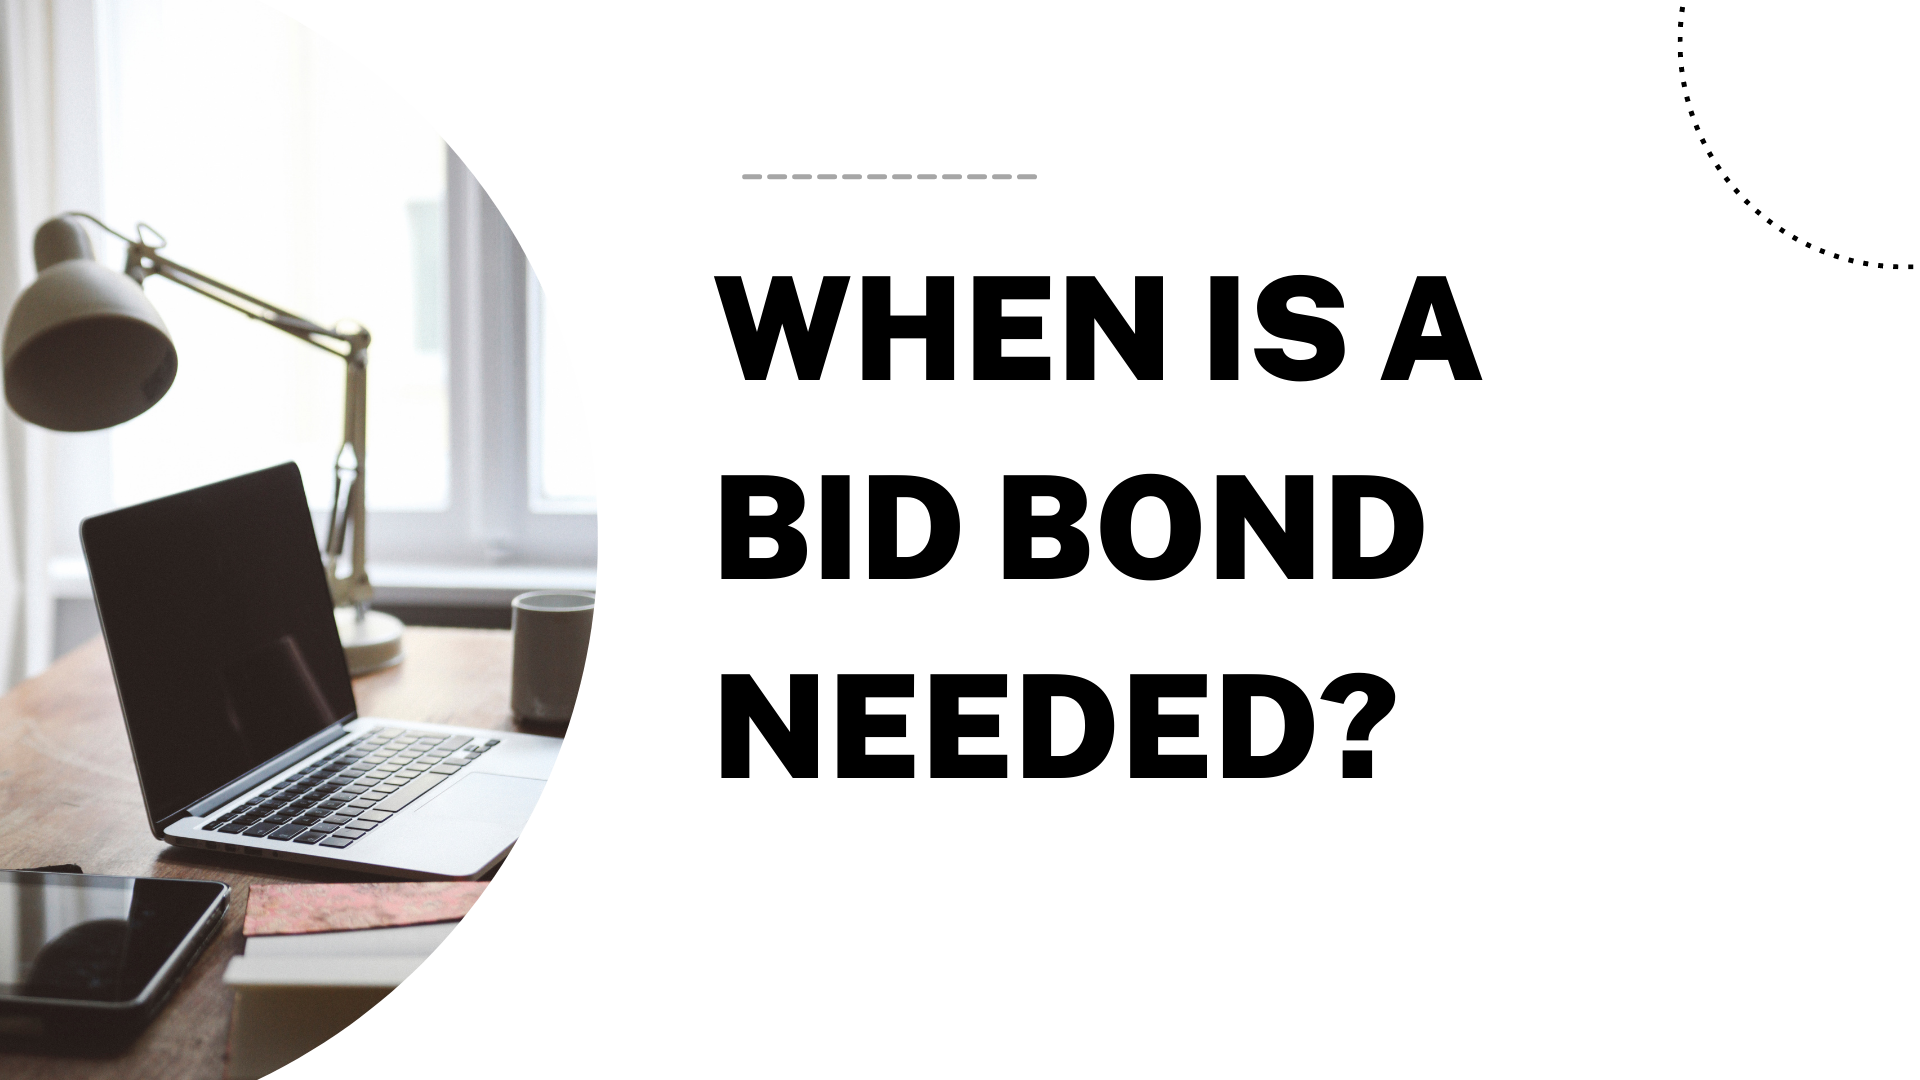 bid bond - When the bid bond is needed - work space